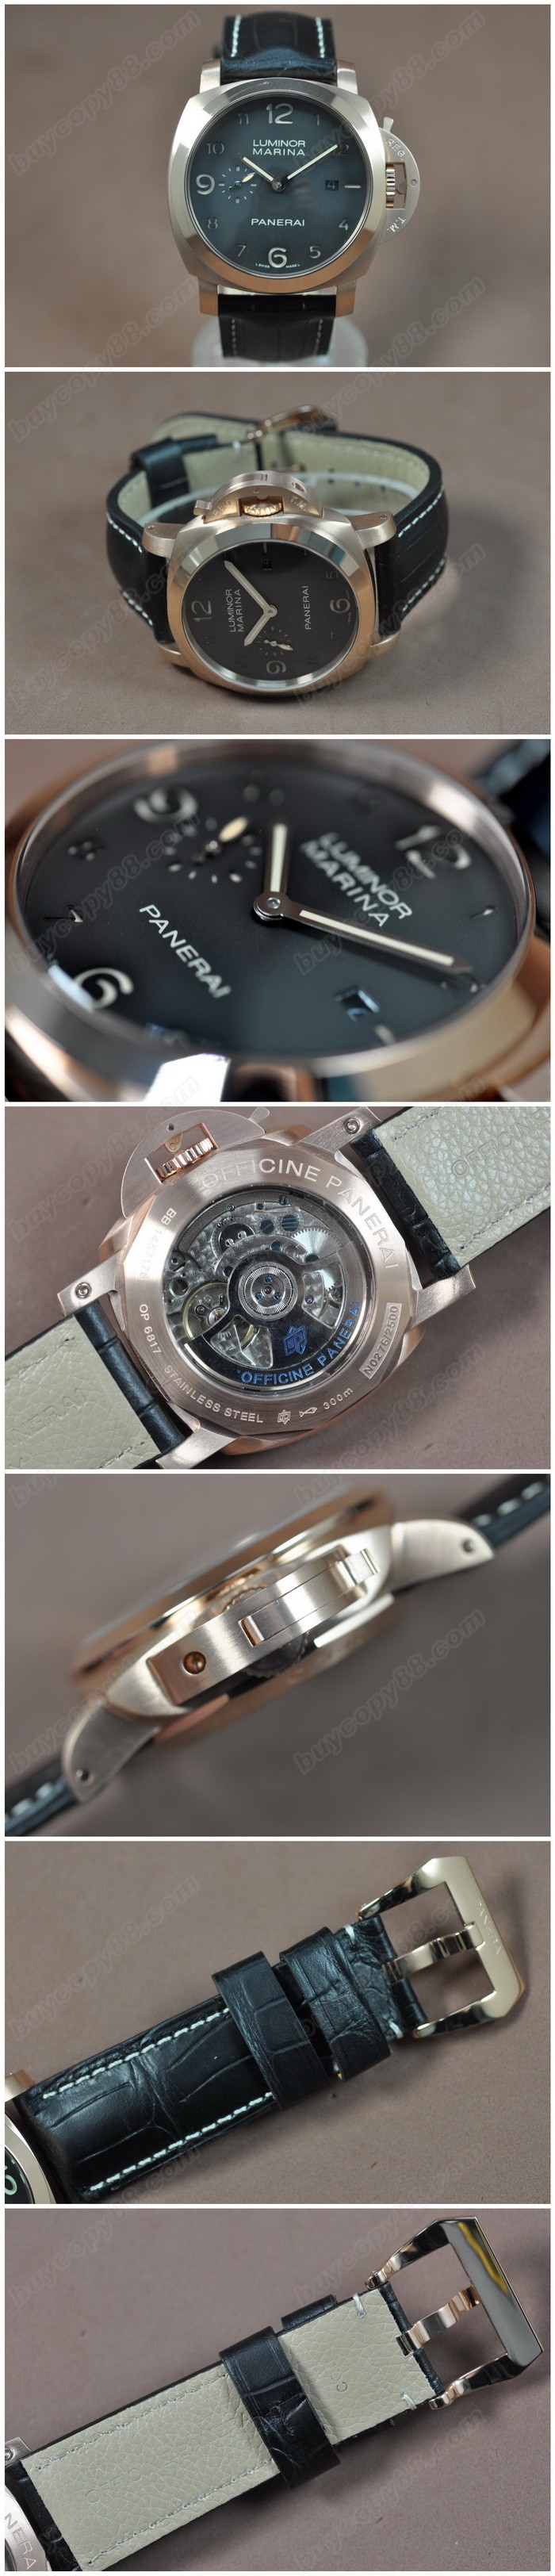  沛納海 Watches Luminor Marina 44mm SS/LE 黑 文字盤 Asia 自動機芯 搭 載   0